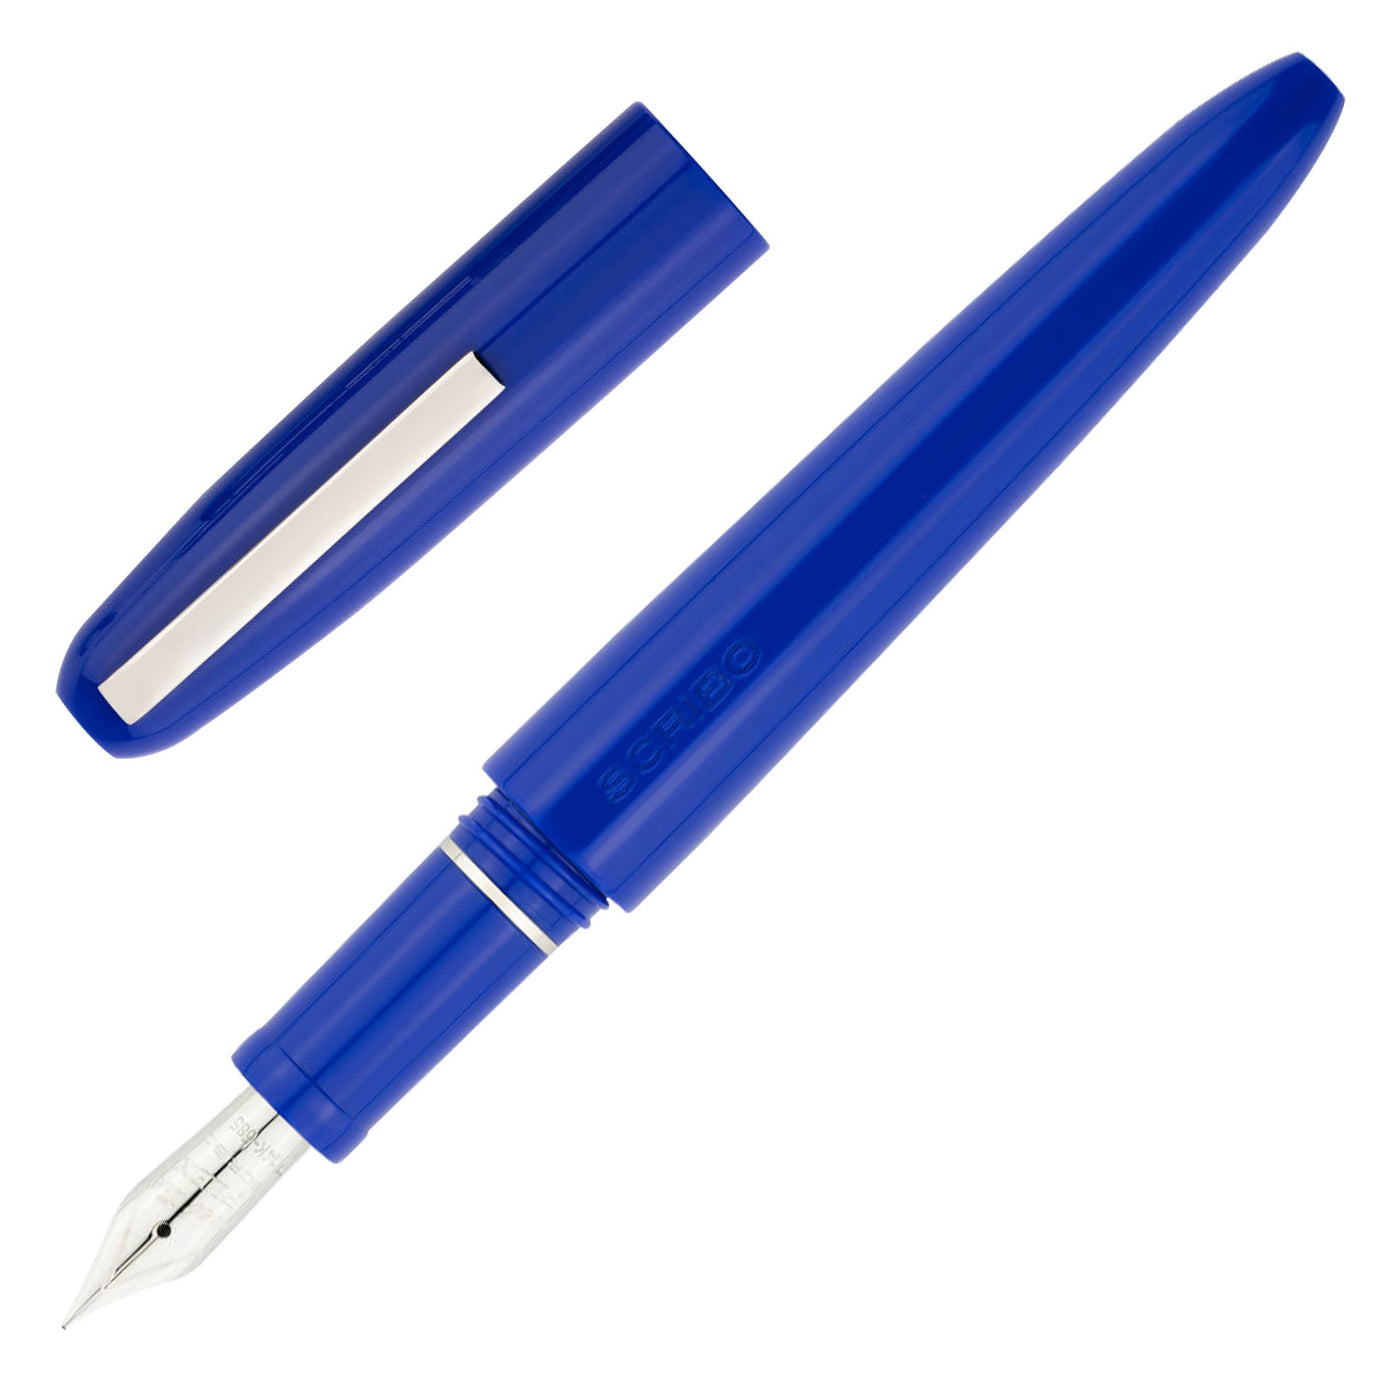 Scribo Piuma Fountain Pen - Pop (Limited Edition) 1